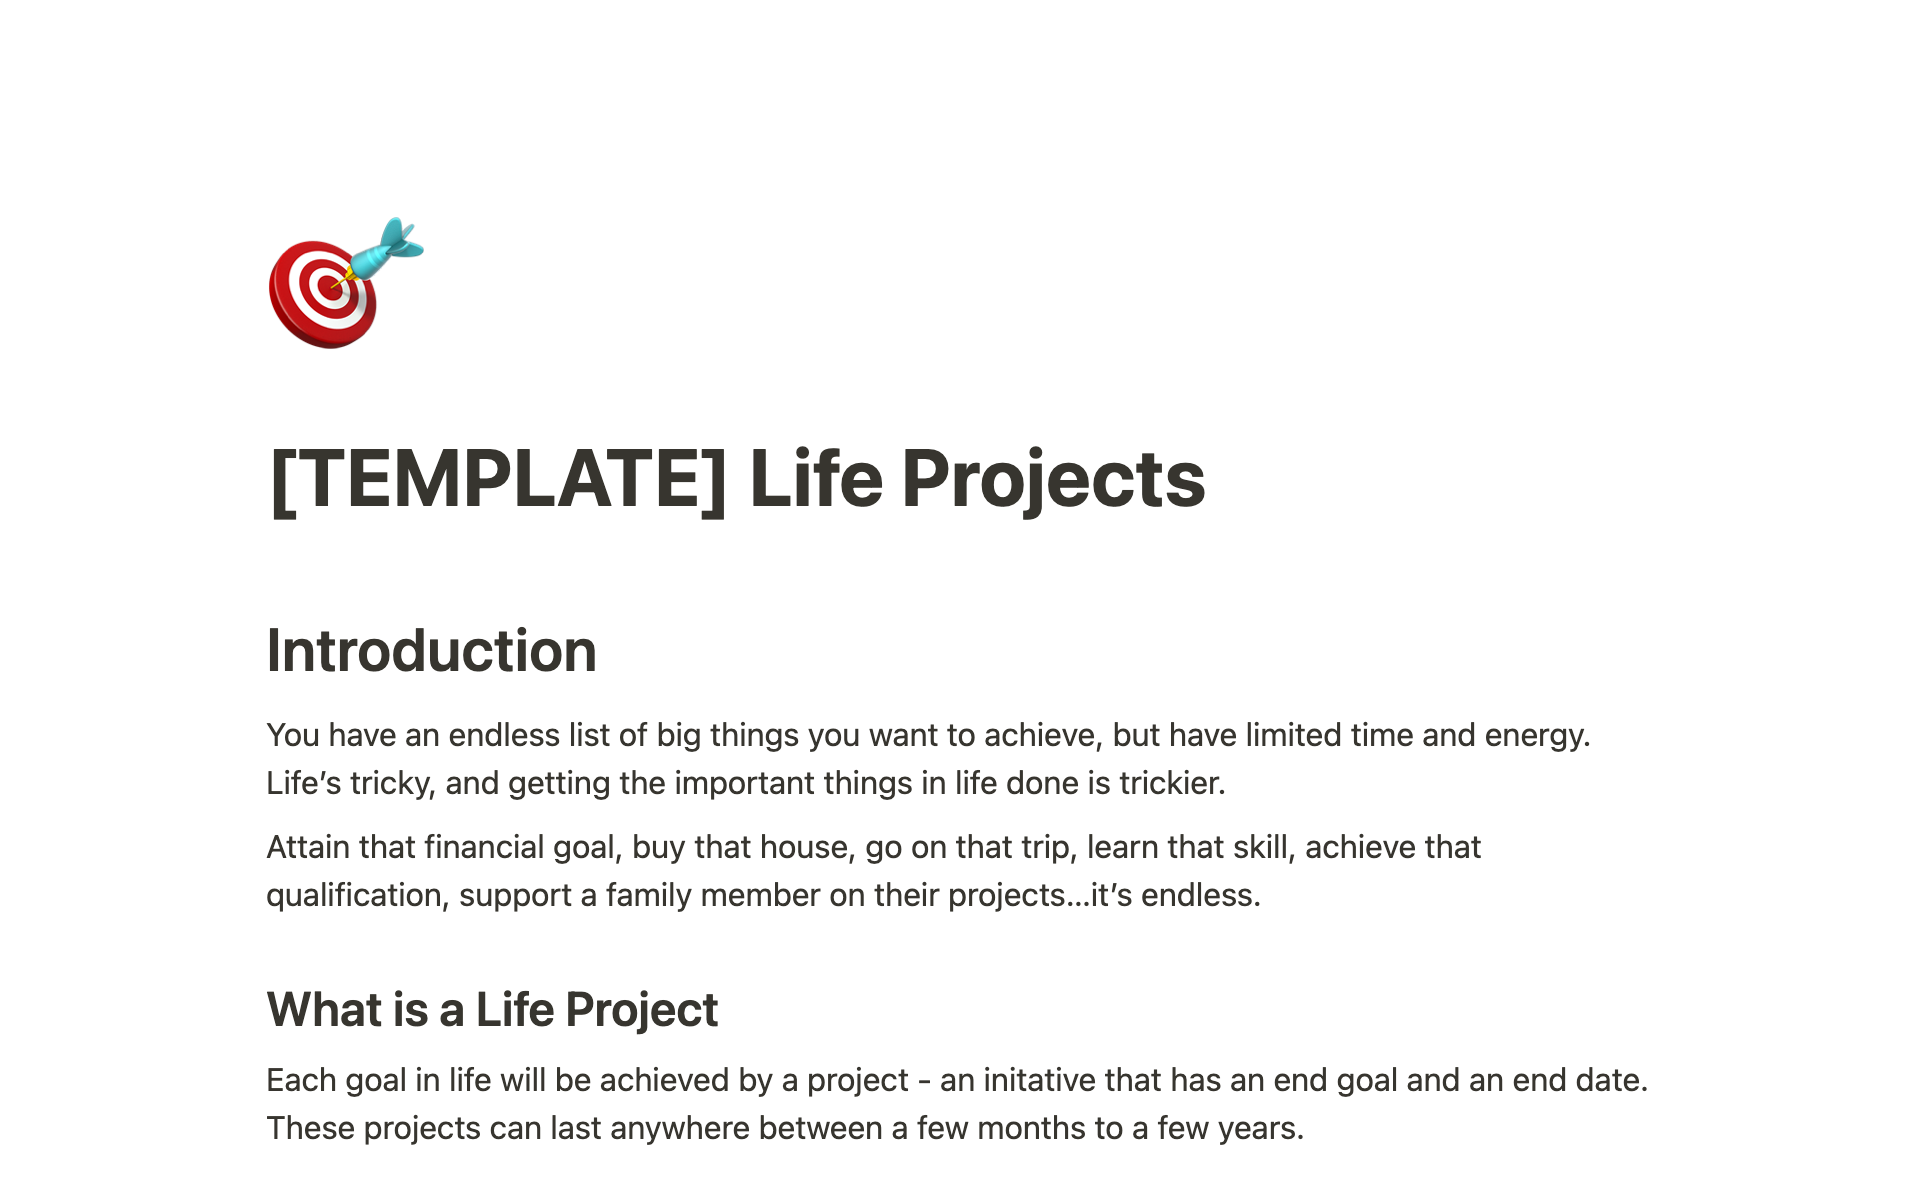 Vista previa de una plantilla para Life Projects